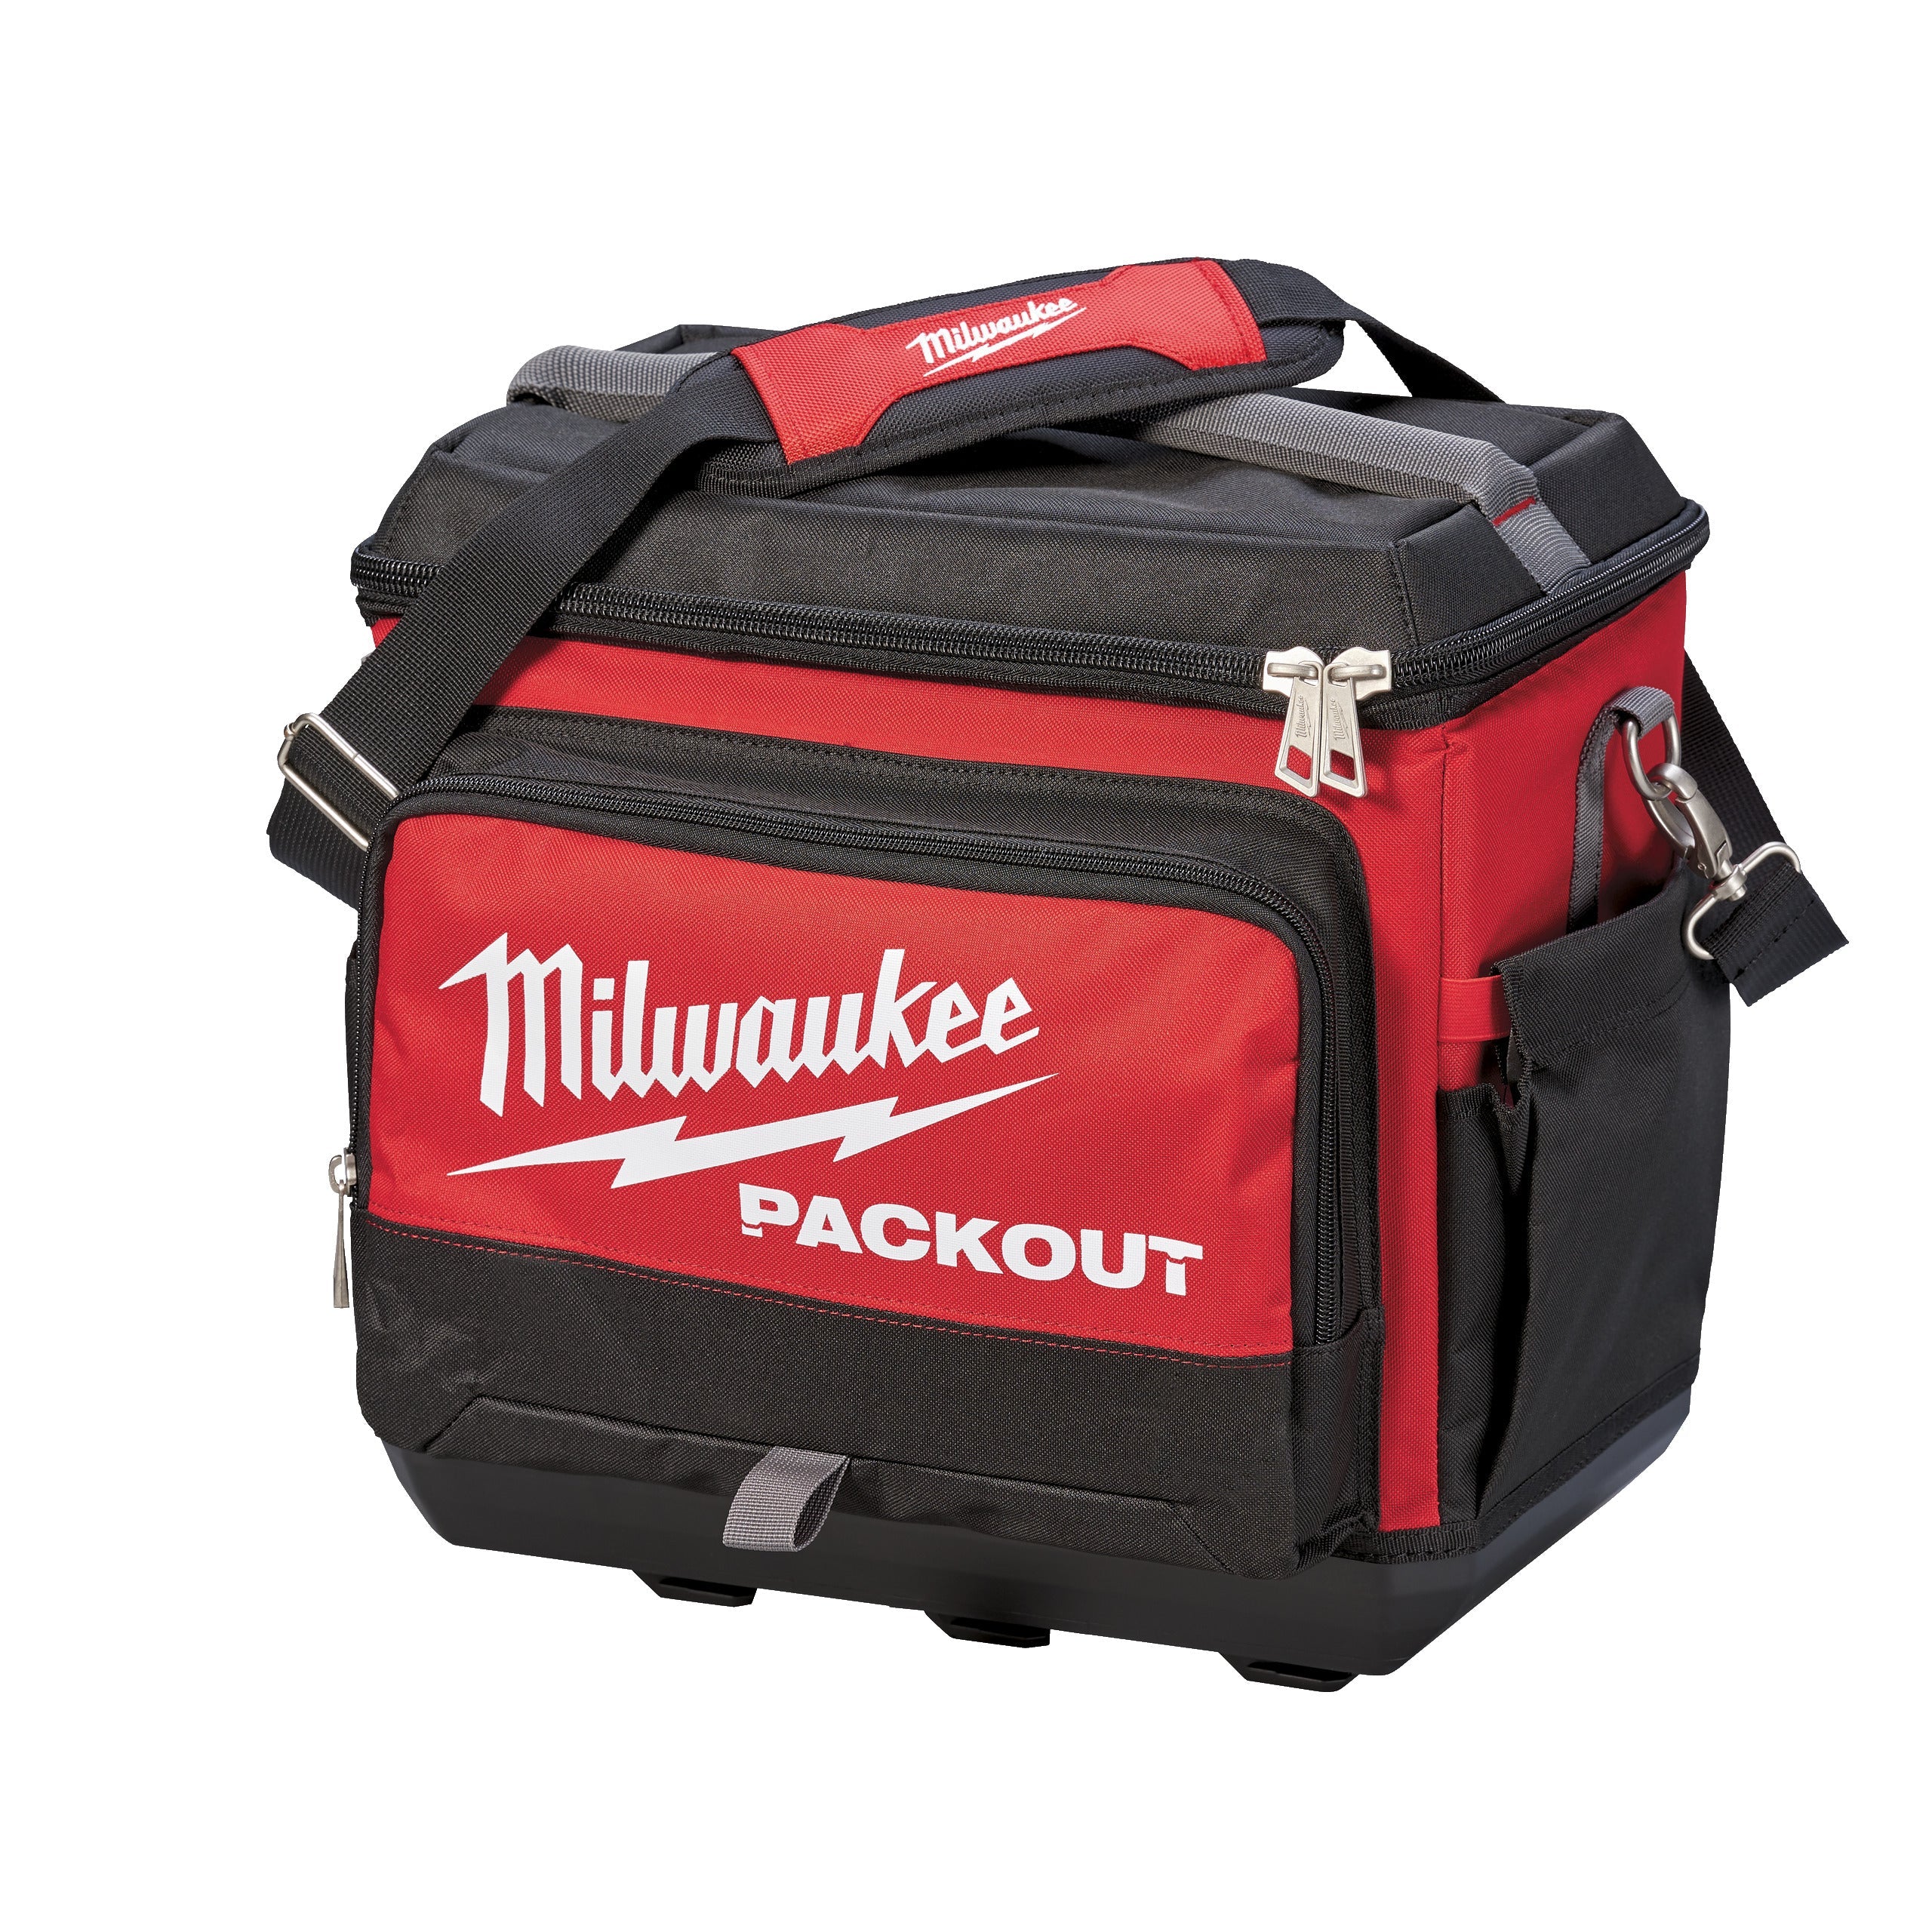 Geantă termică Packout Milwaukee cod 4932471132